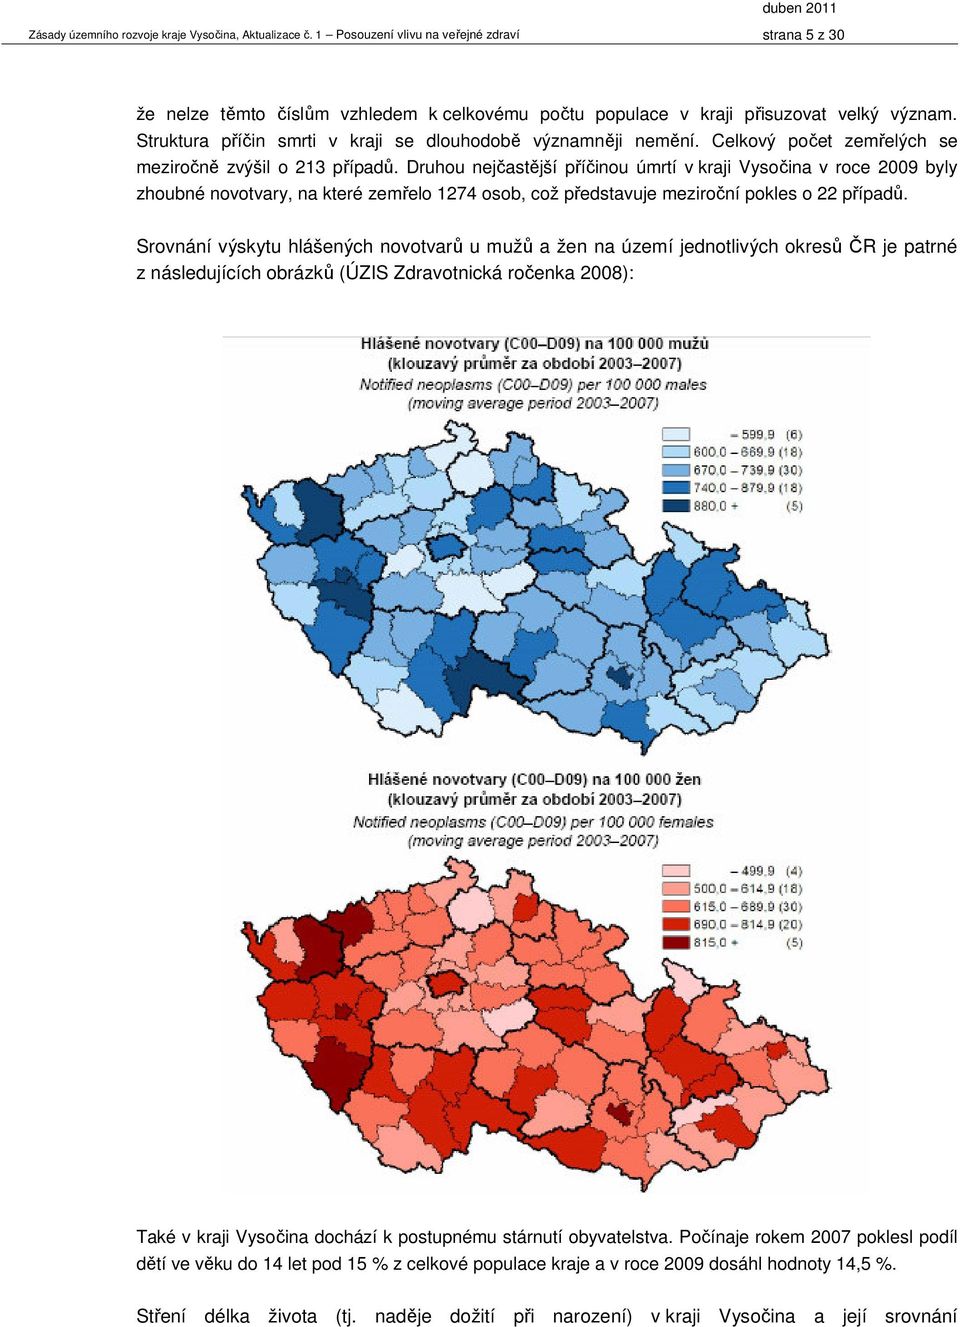 Druhou nejčastější příčinou úmrtí v kraji Vysočina v roce 2009 byly zhoubné novotvary, na které zemřelo 1274 osob, což představuje meziroční pokles o 22 případů.